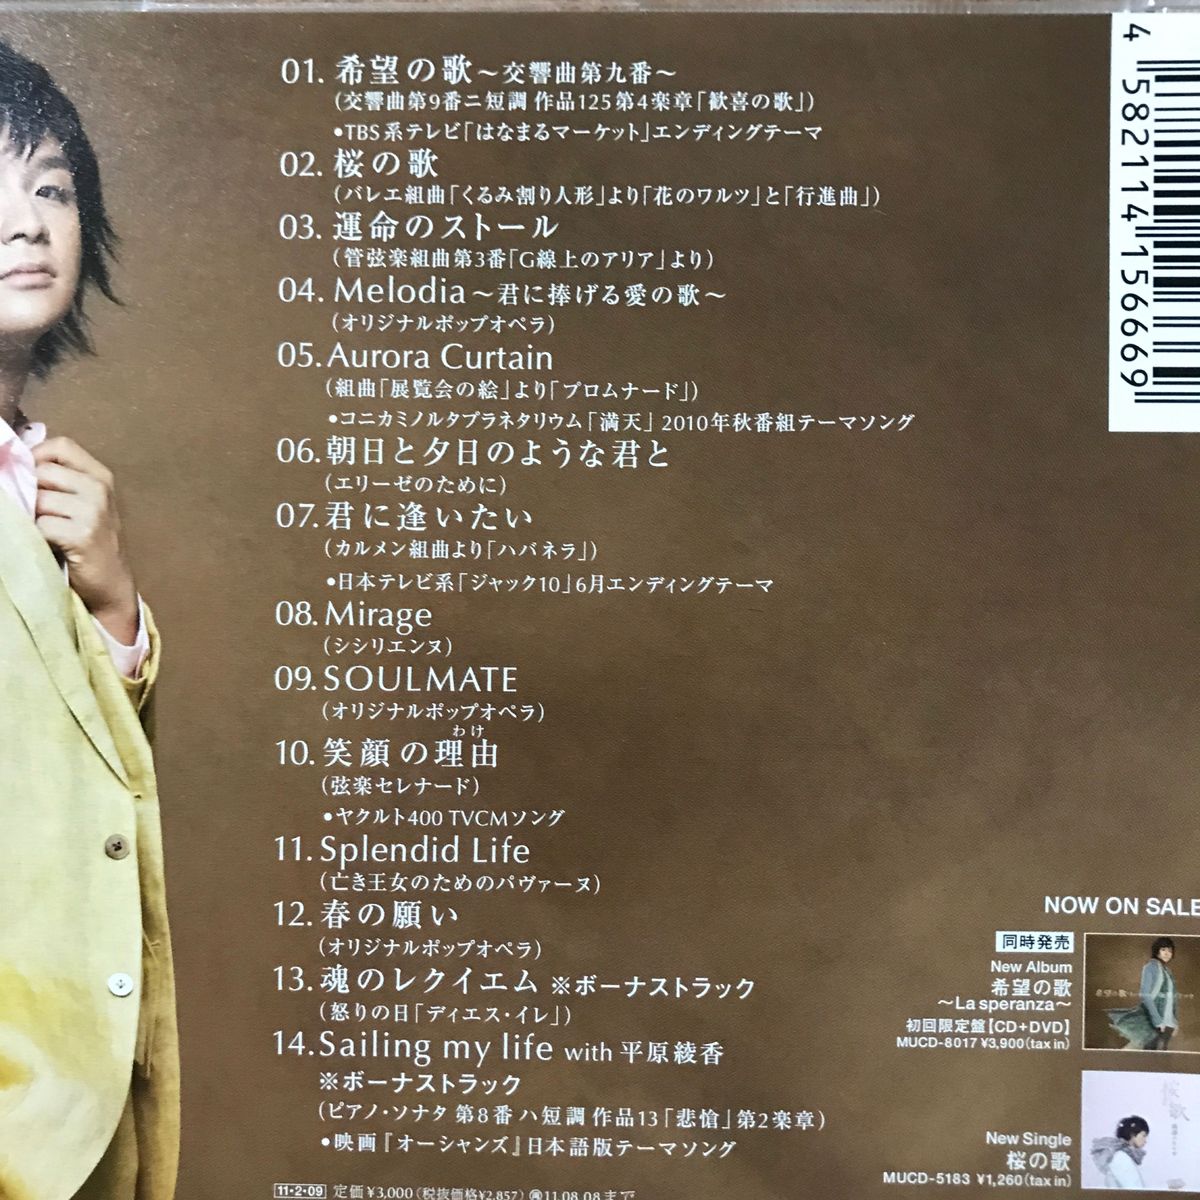 [国内盤CD] 藤澤ノリマサ/希望の歌〜La speranza〜 (ラスペランツァ)